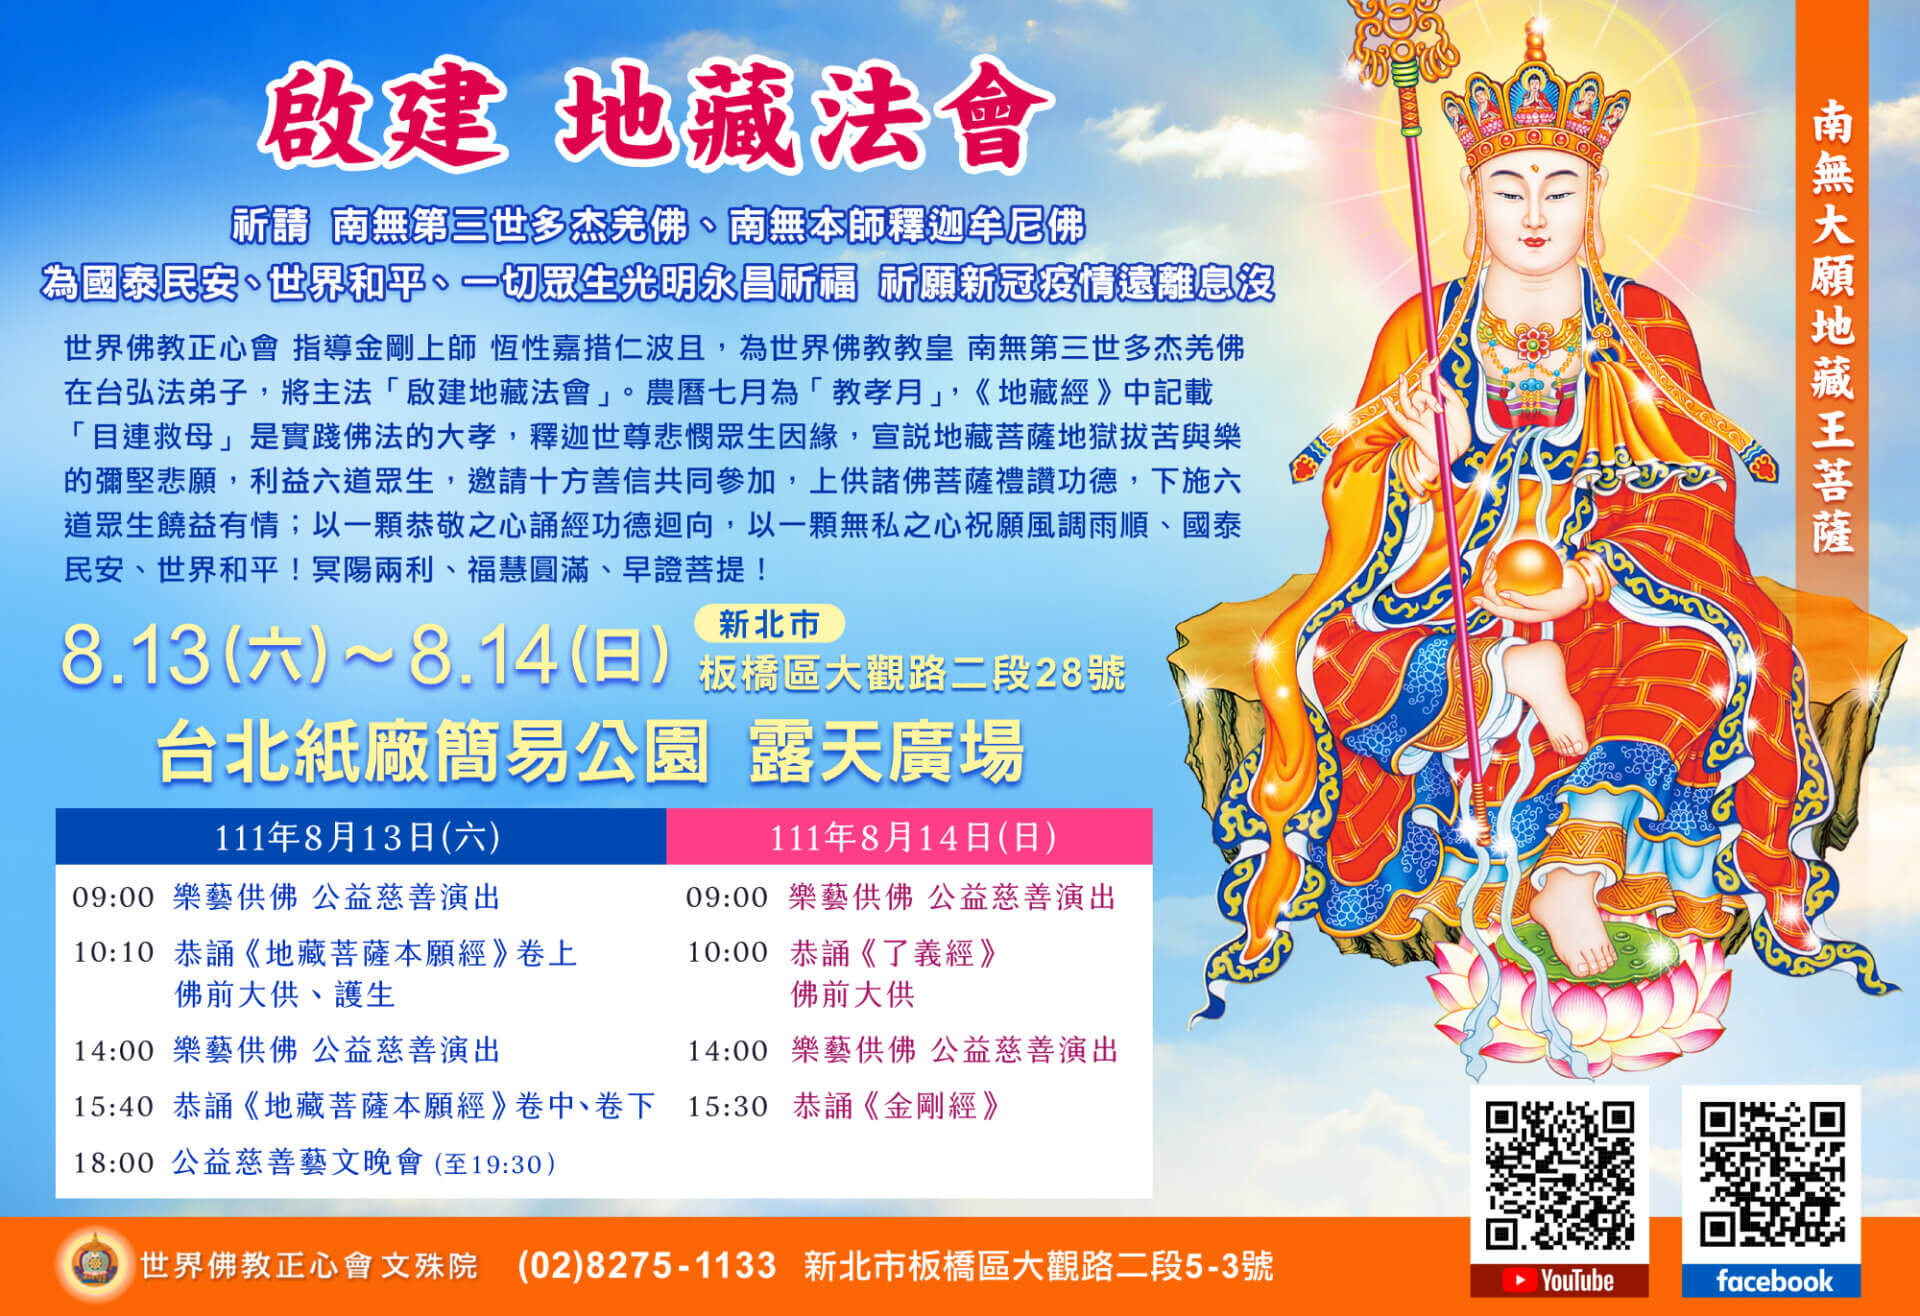 世界佛教正心會將於8月13日-14日假台北紙廠簡易公園舉辦「啟建地藏法會」